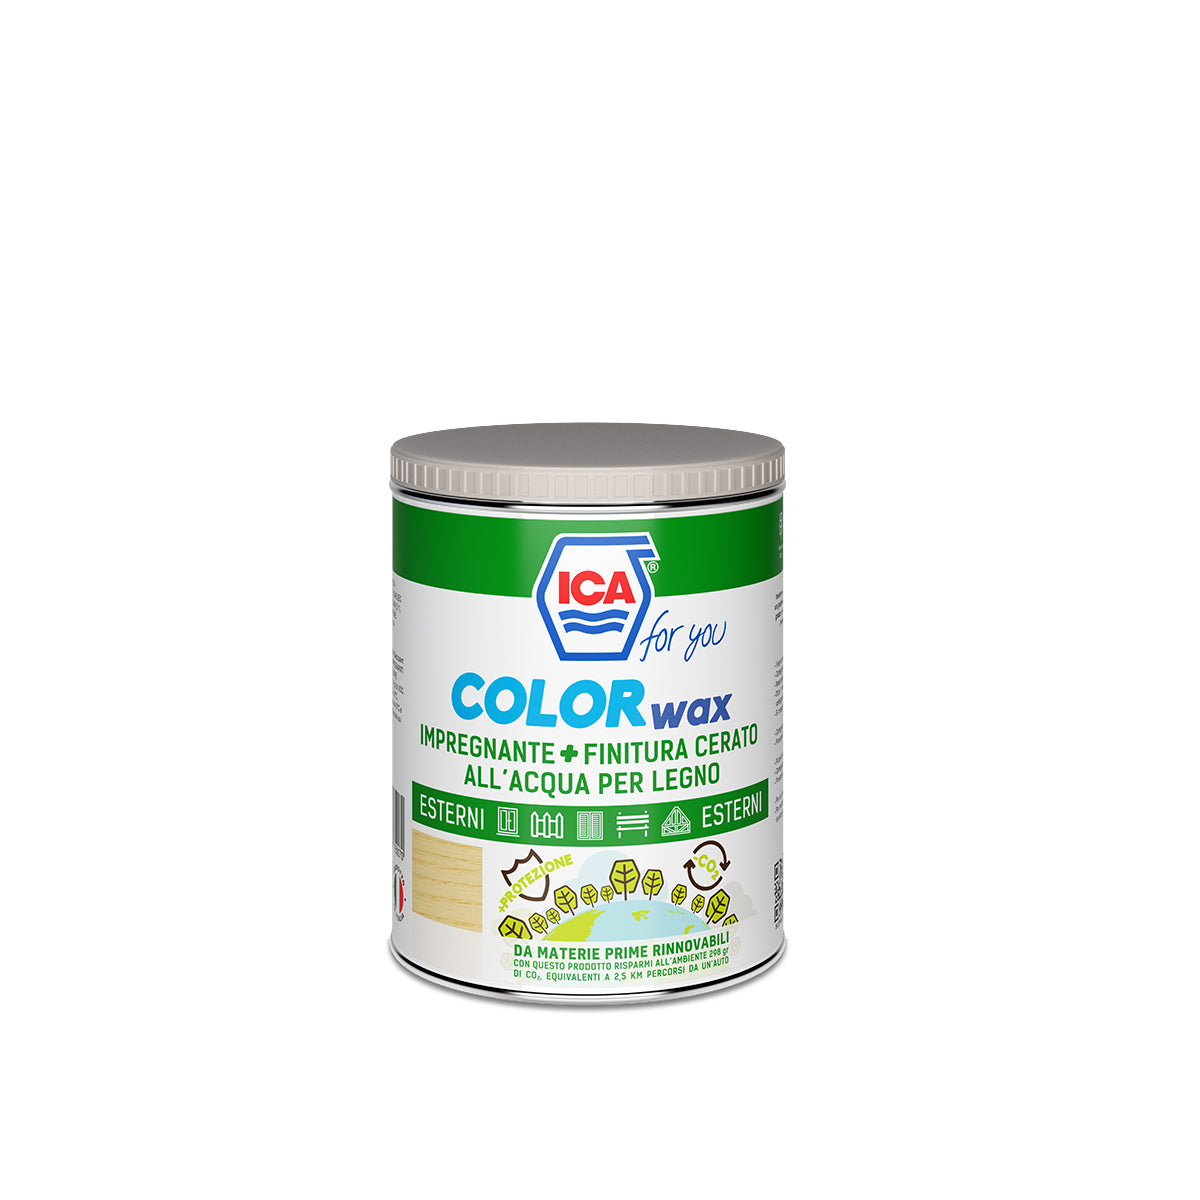 ICA Color Wax - Impregnante + finitura cerato all'acqua per legno - 0,75L